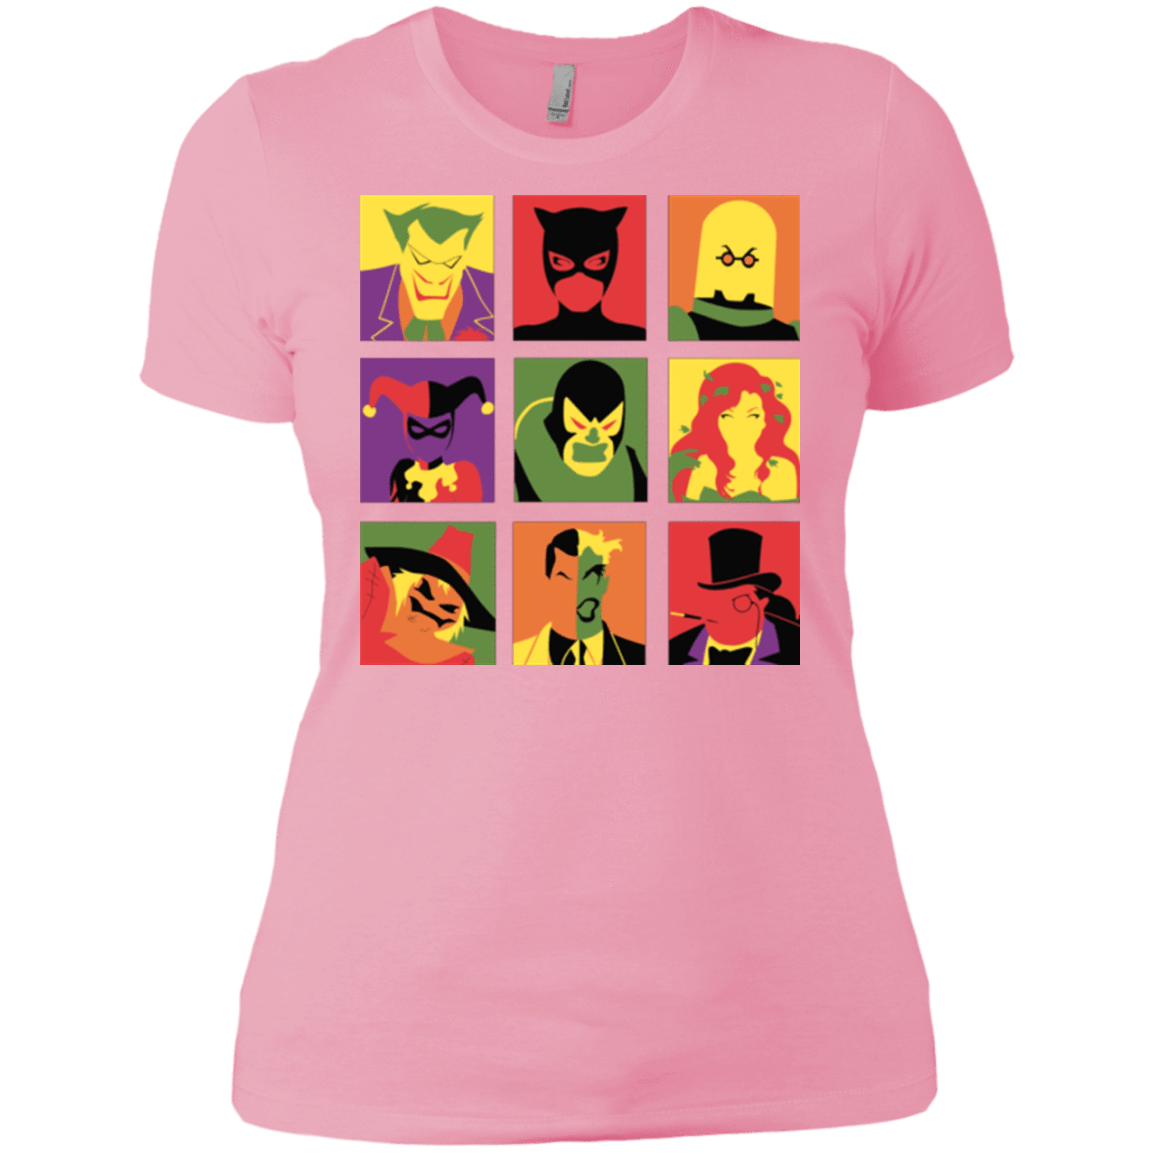 T-Shirts Light Pink / X-Small Bat Pop Women's Premium T-Shirt